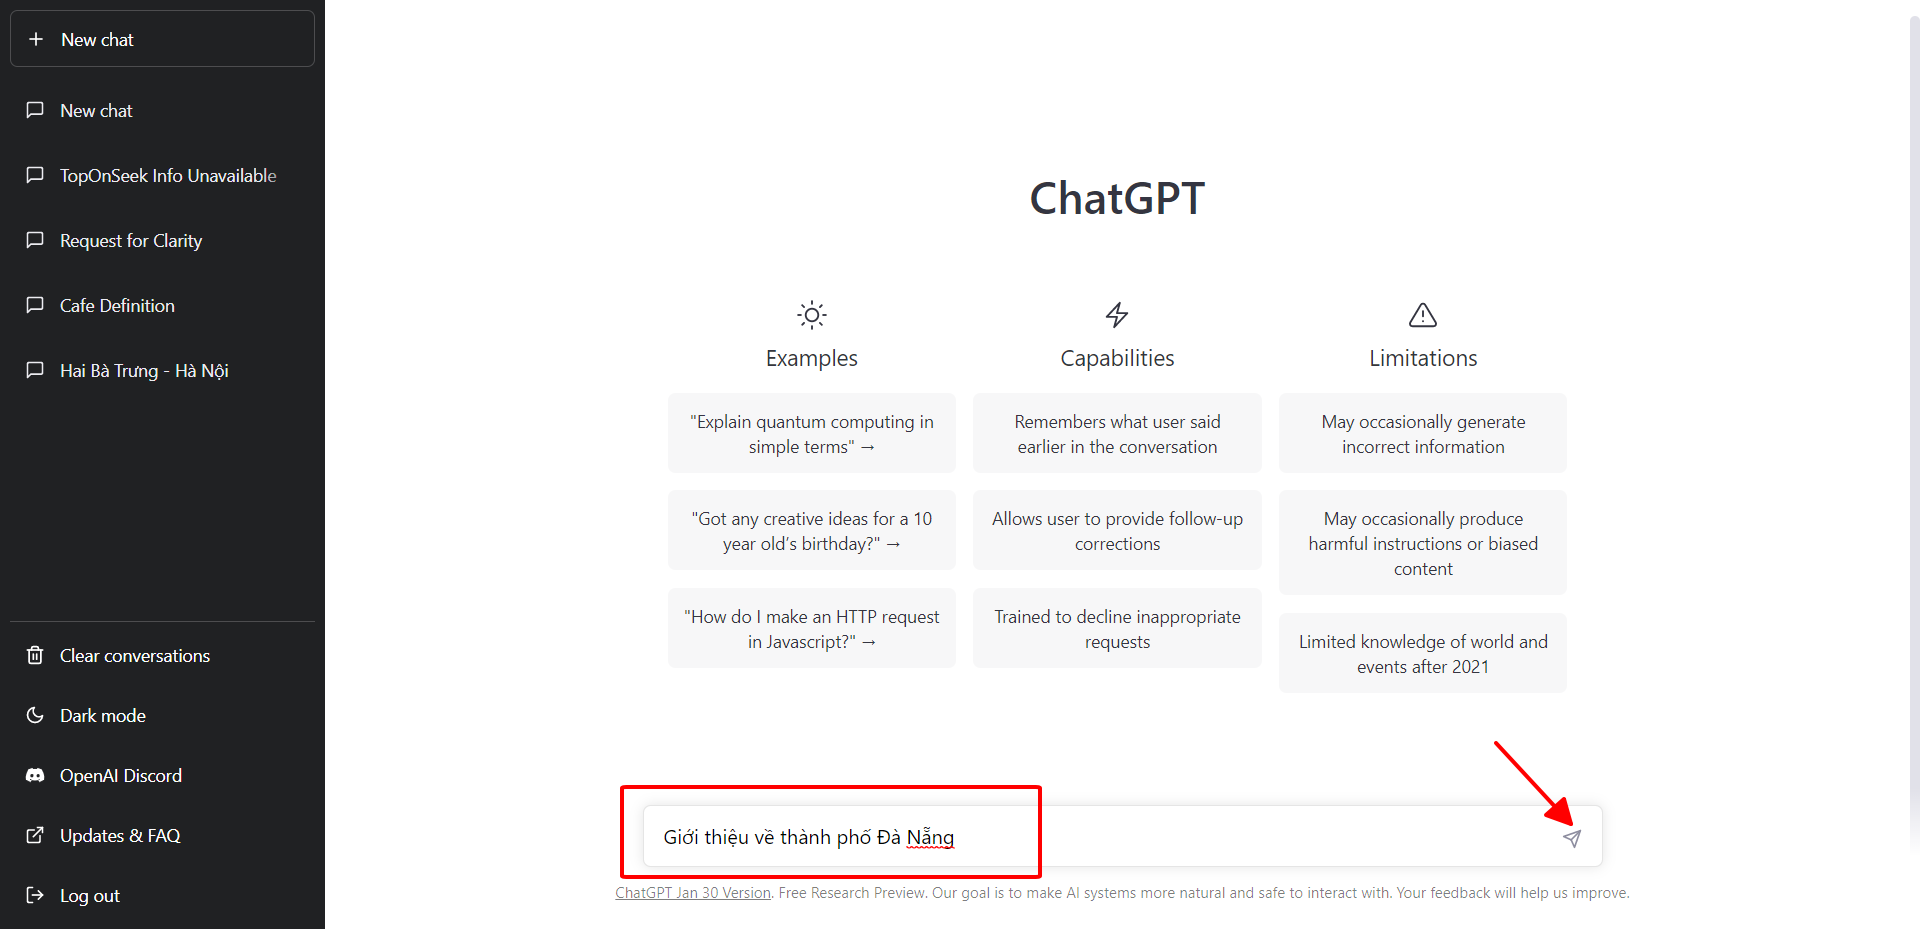 Nhập nội dung vào ô trống và nhấn biểu tượng send để gửi thông tin đến ChatGPT - cách dùng ChatGPT